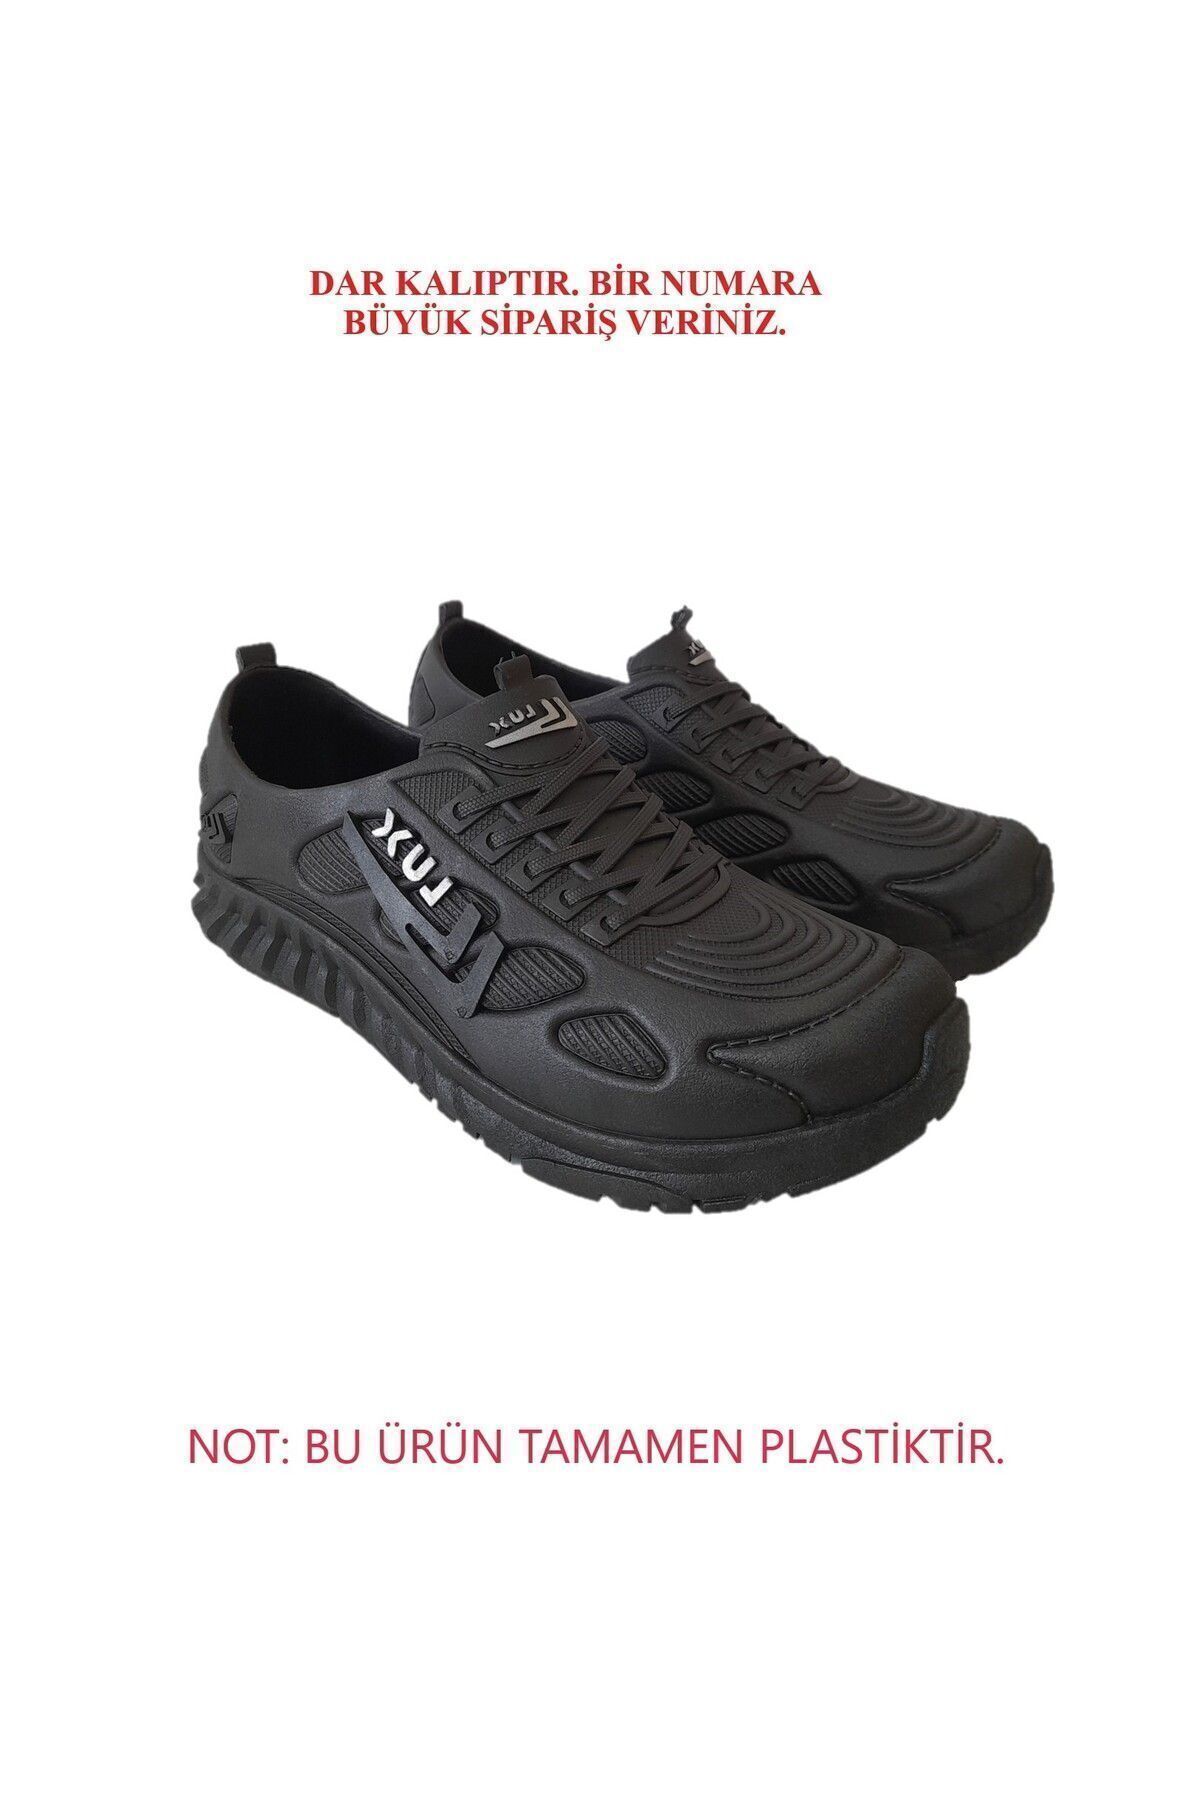 MAVİ ZAMBAK Plastik İş Ayakkabısı Çok Hafif Çok Esnek Lastik Ayakkabı MZ213